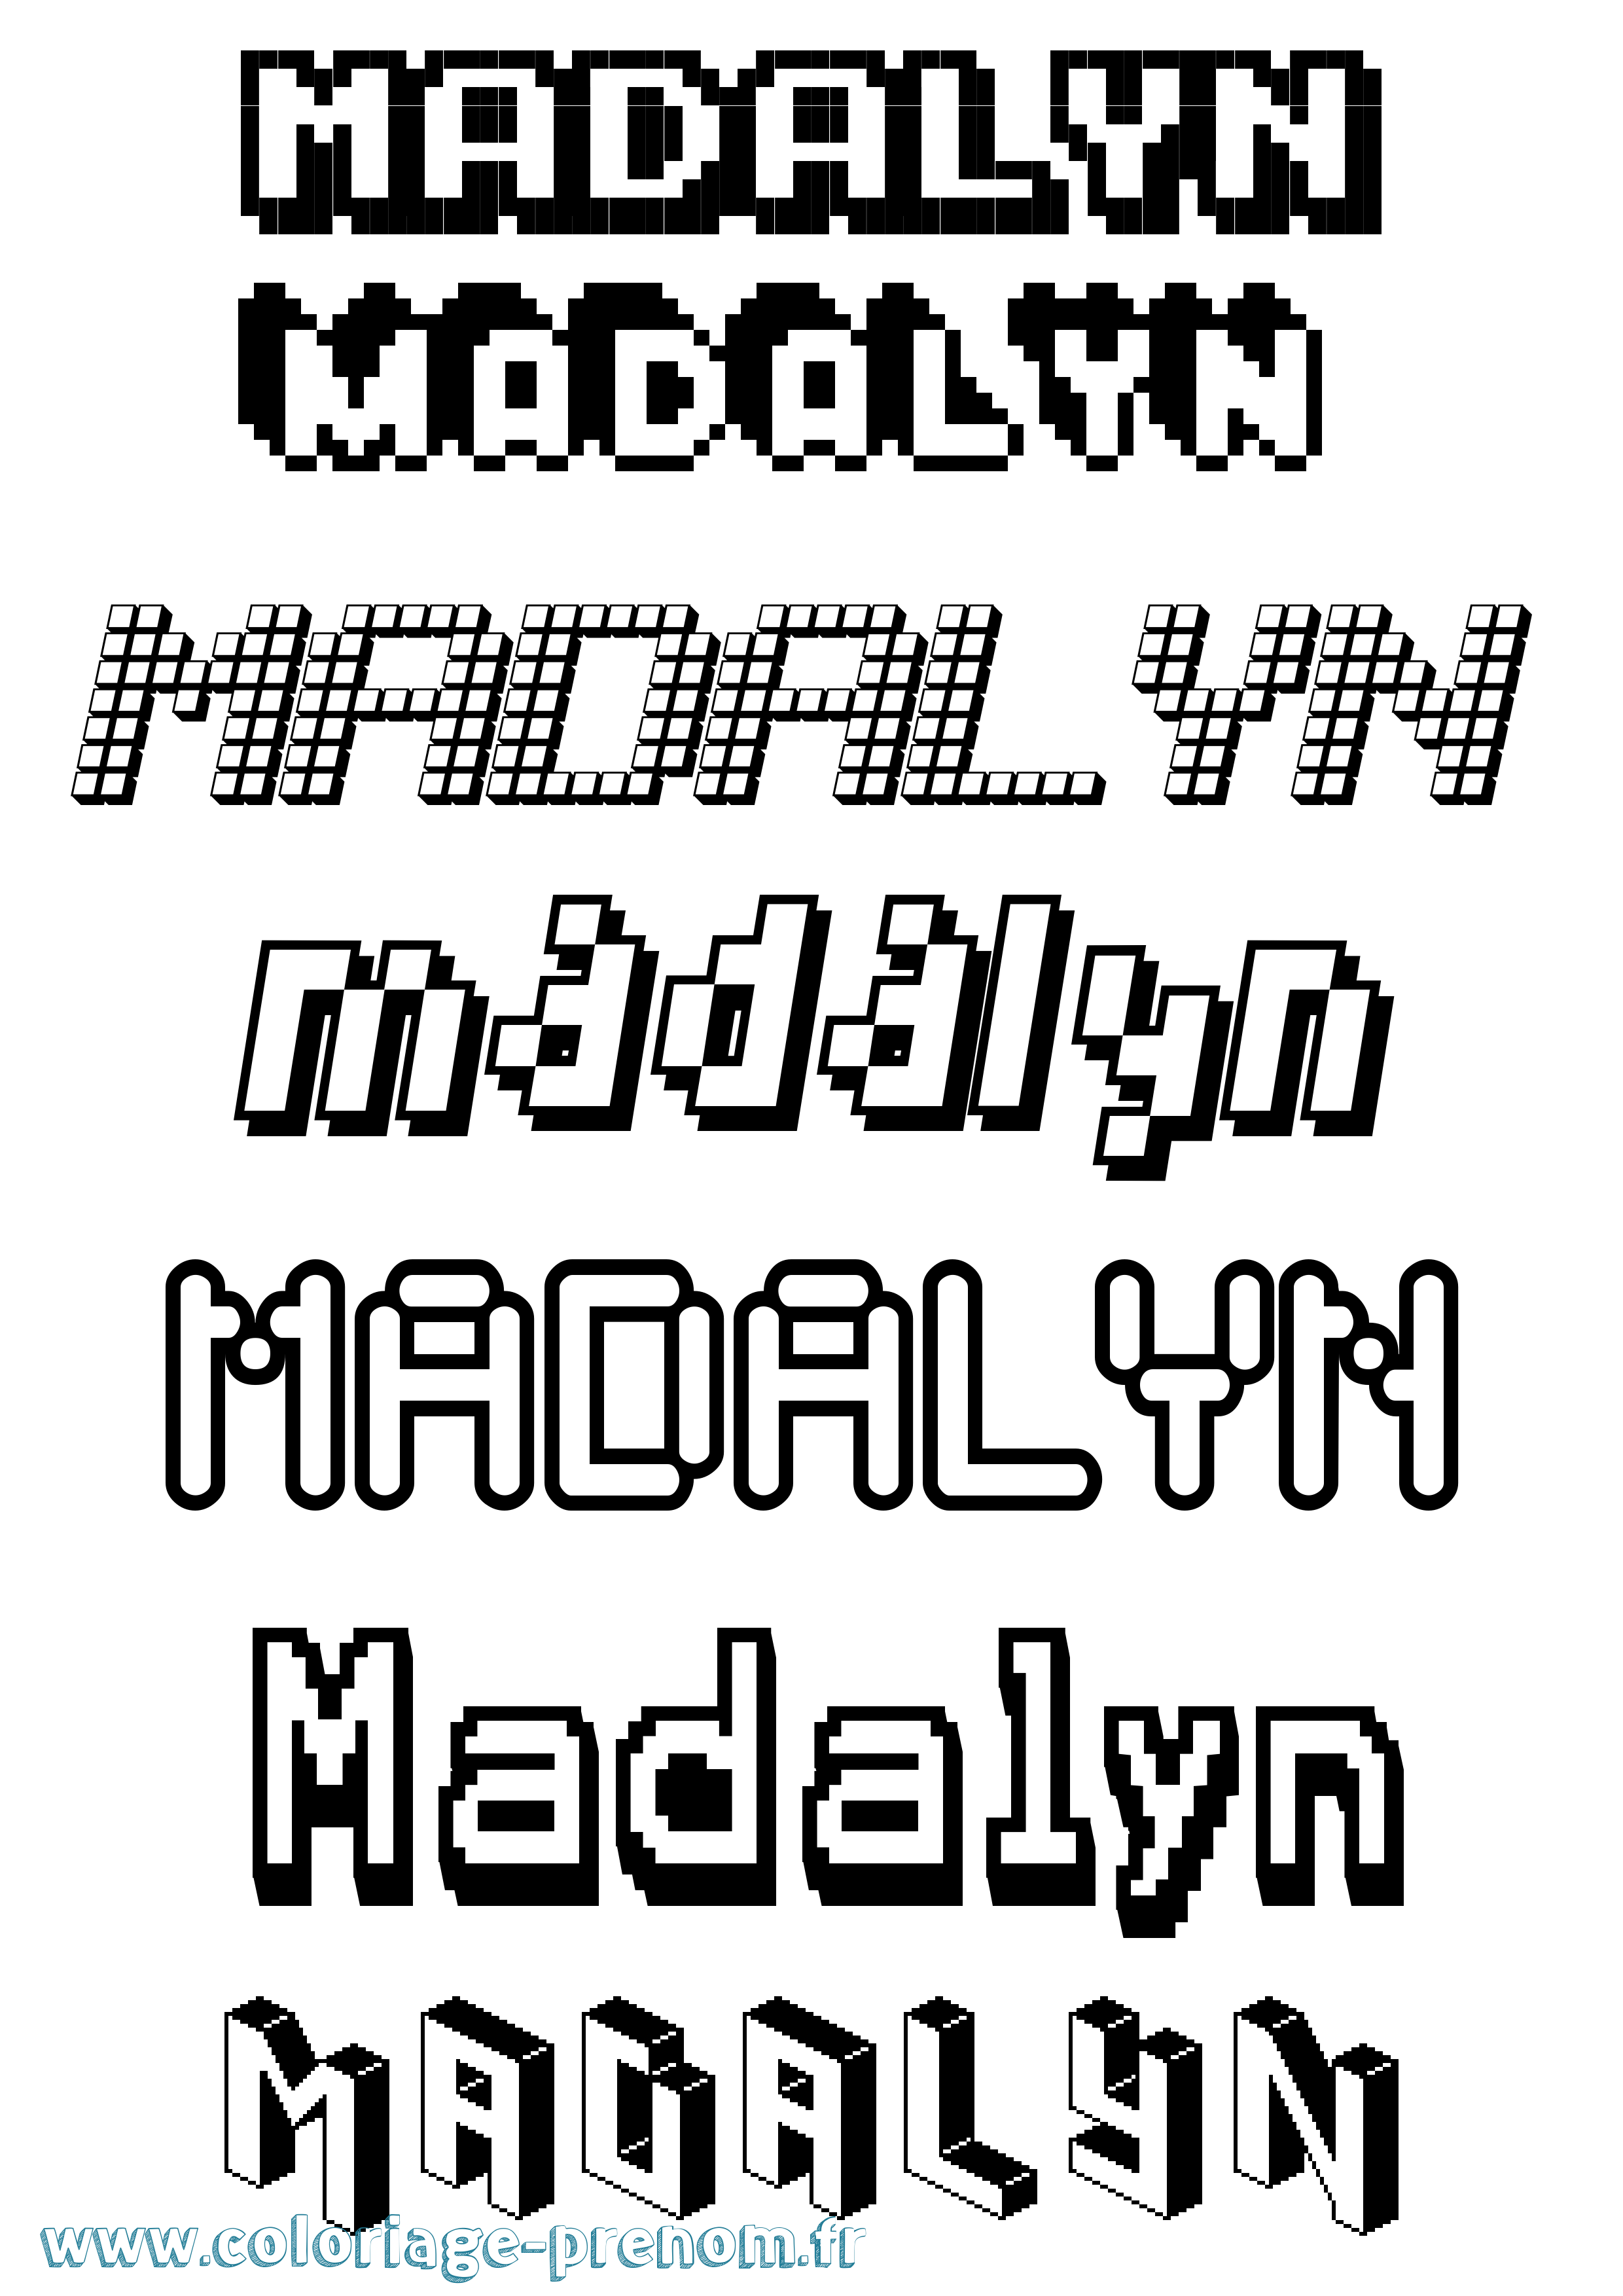 Coloriage prénom Madalyn Pixel